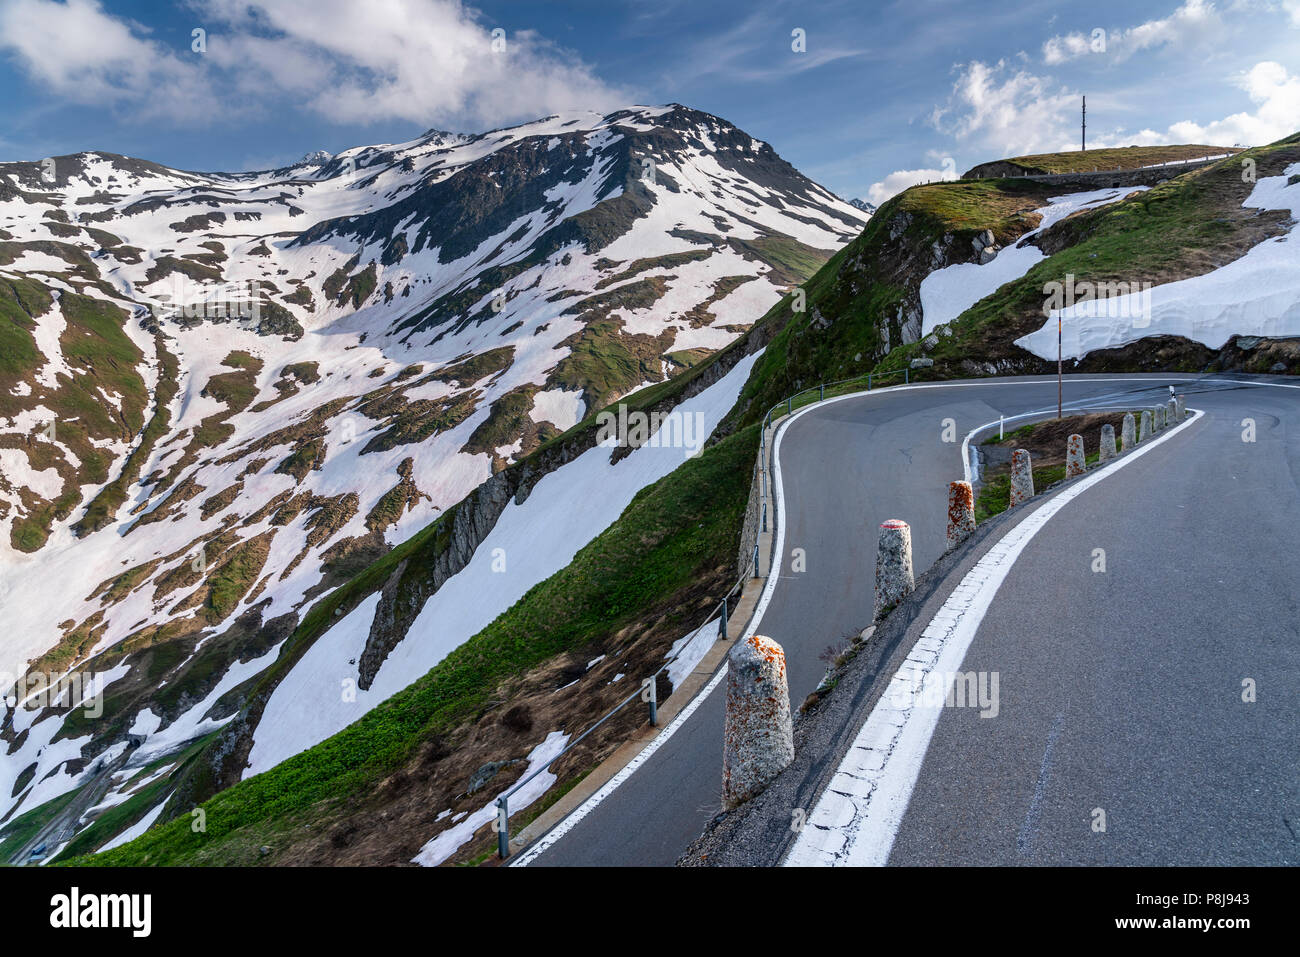 Mountain pass road Furkapass, Urserental, Canton Uri, Switzerland Stock Photo